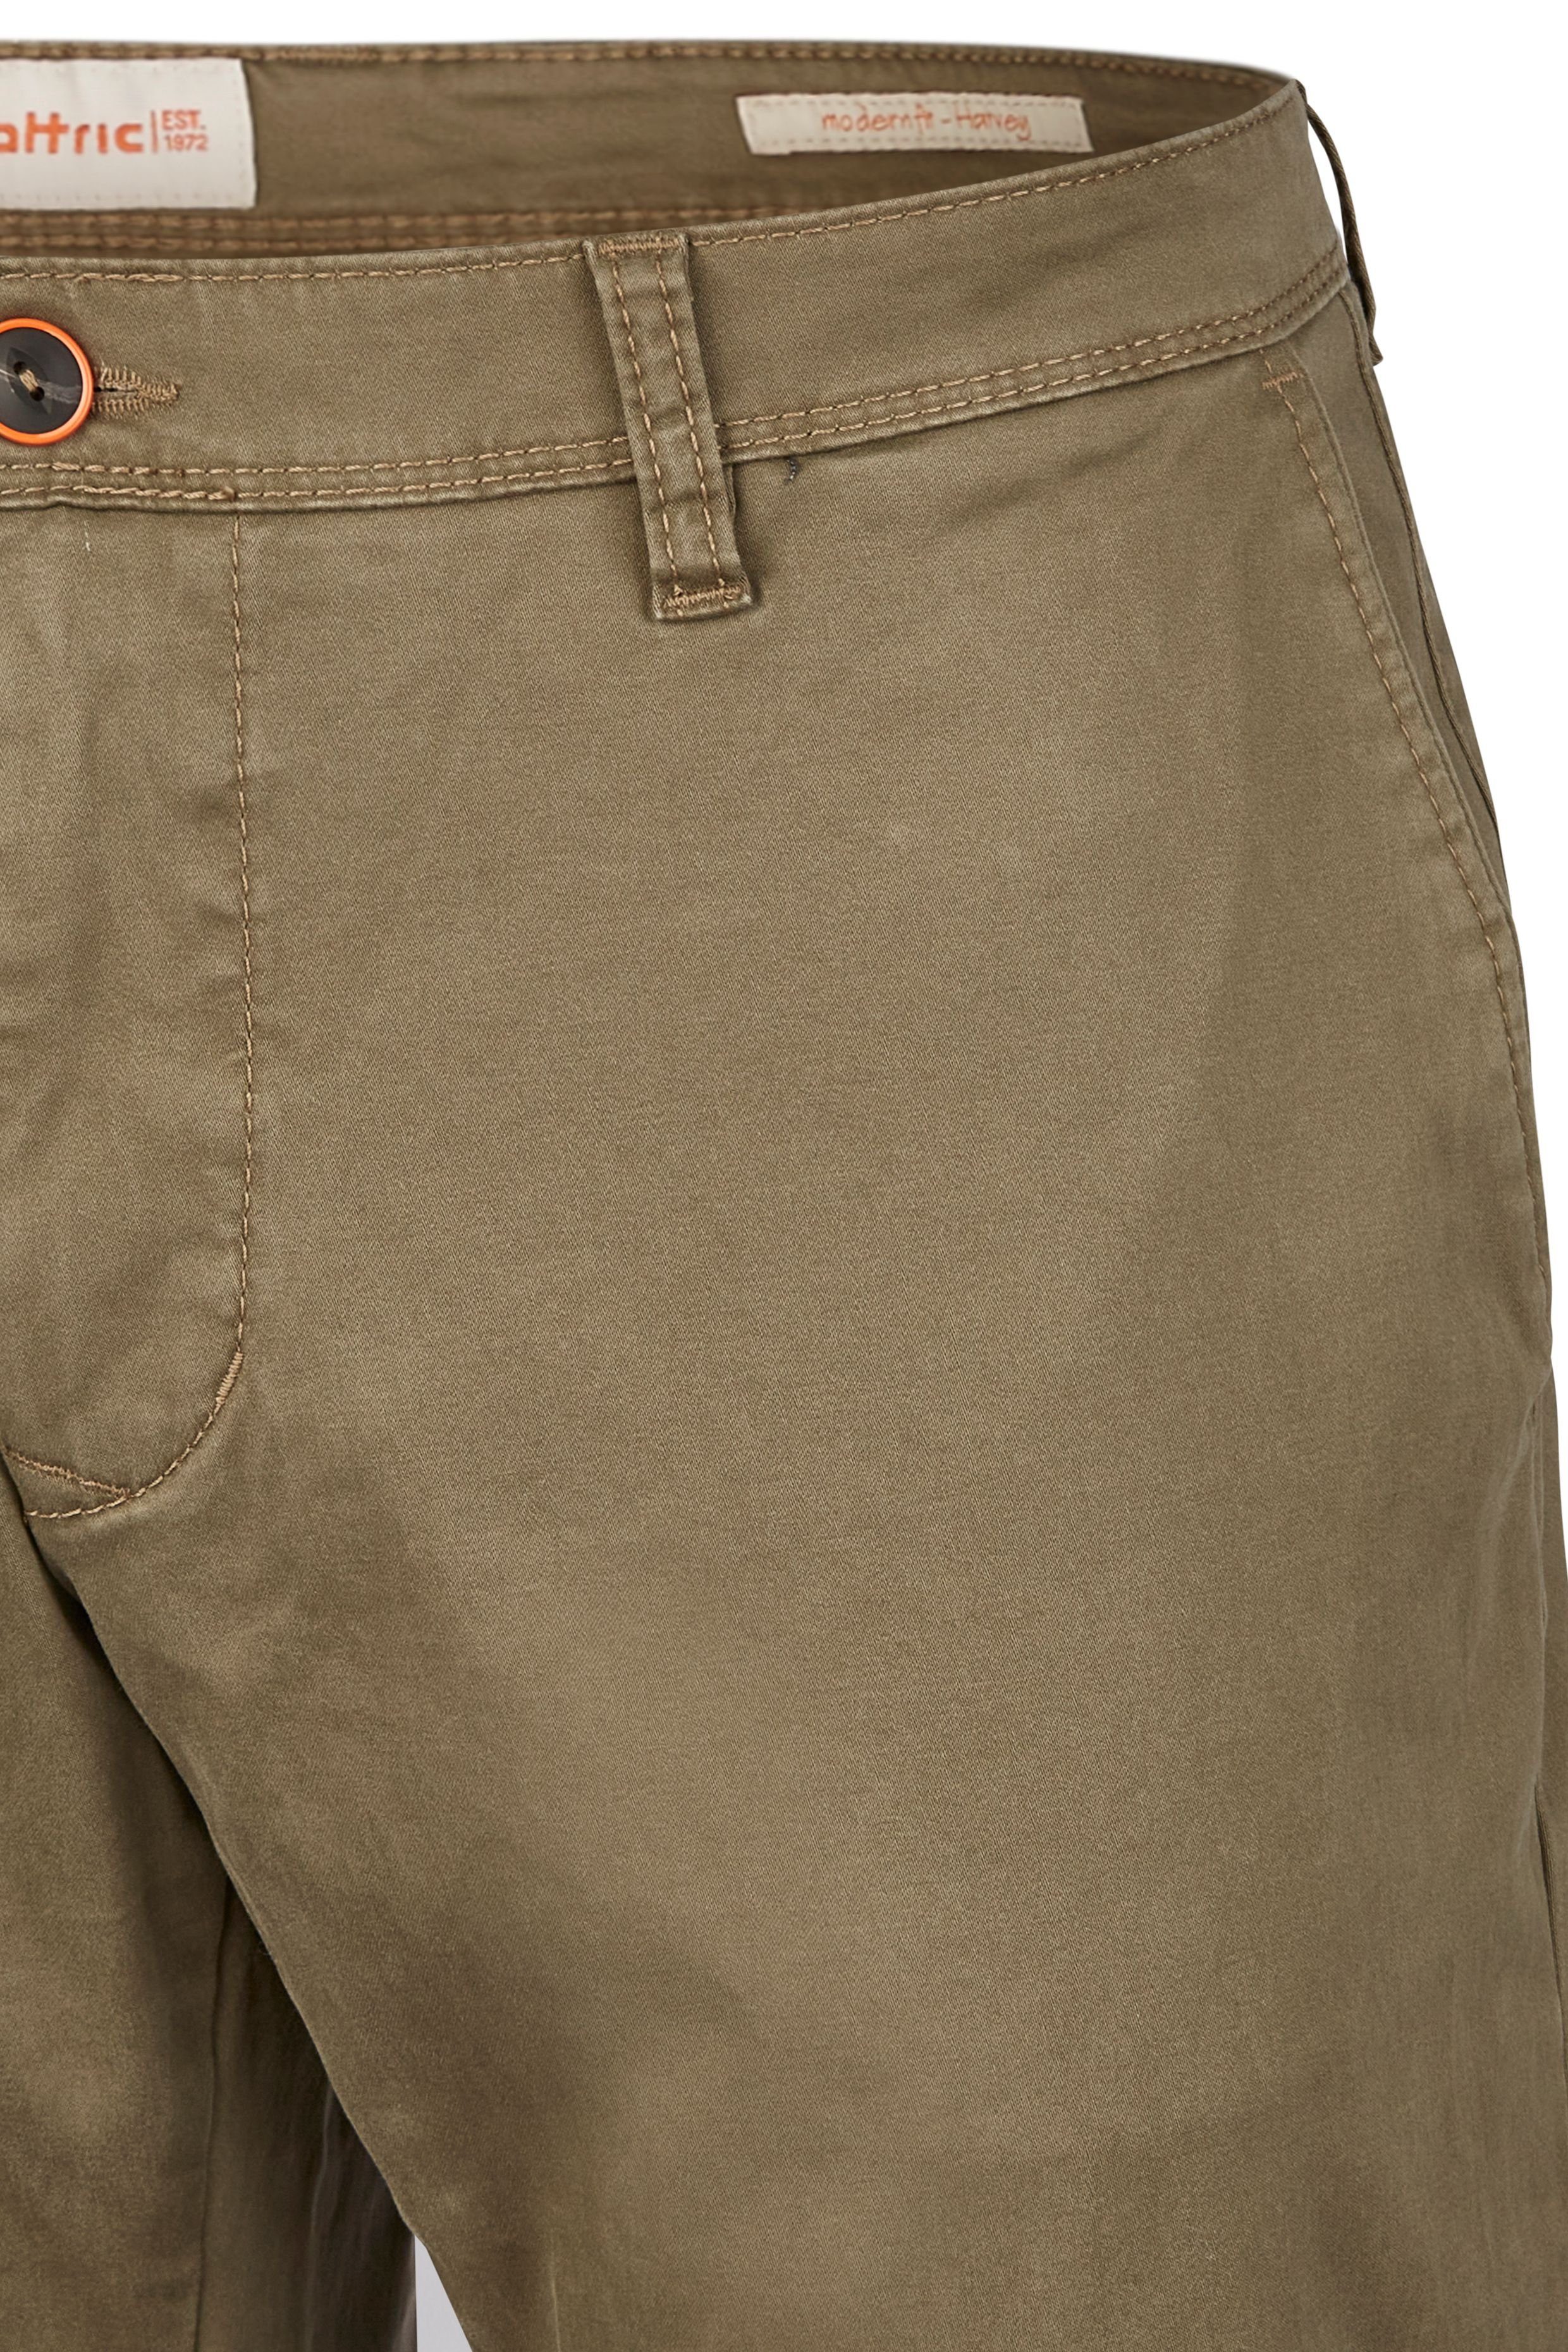 Hattric 5-Pocket-Hose mid brown